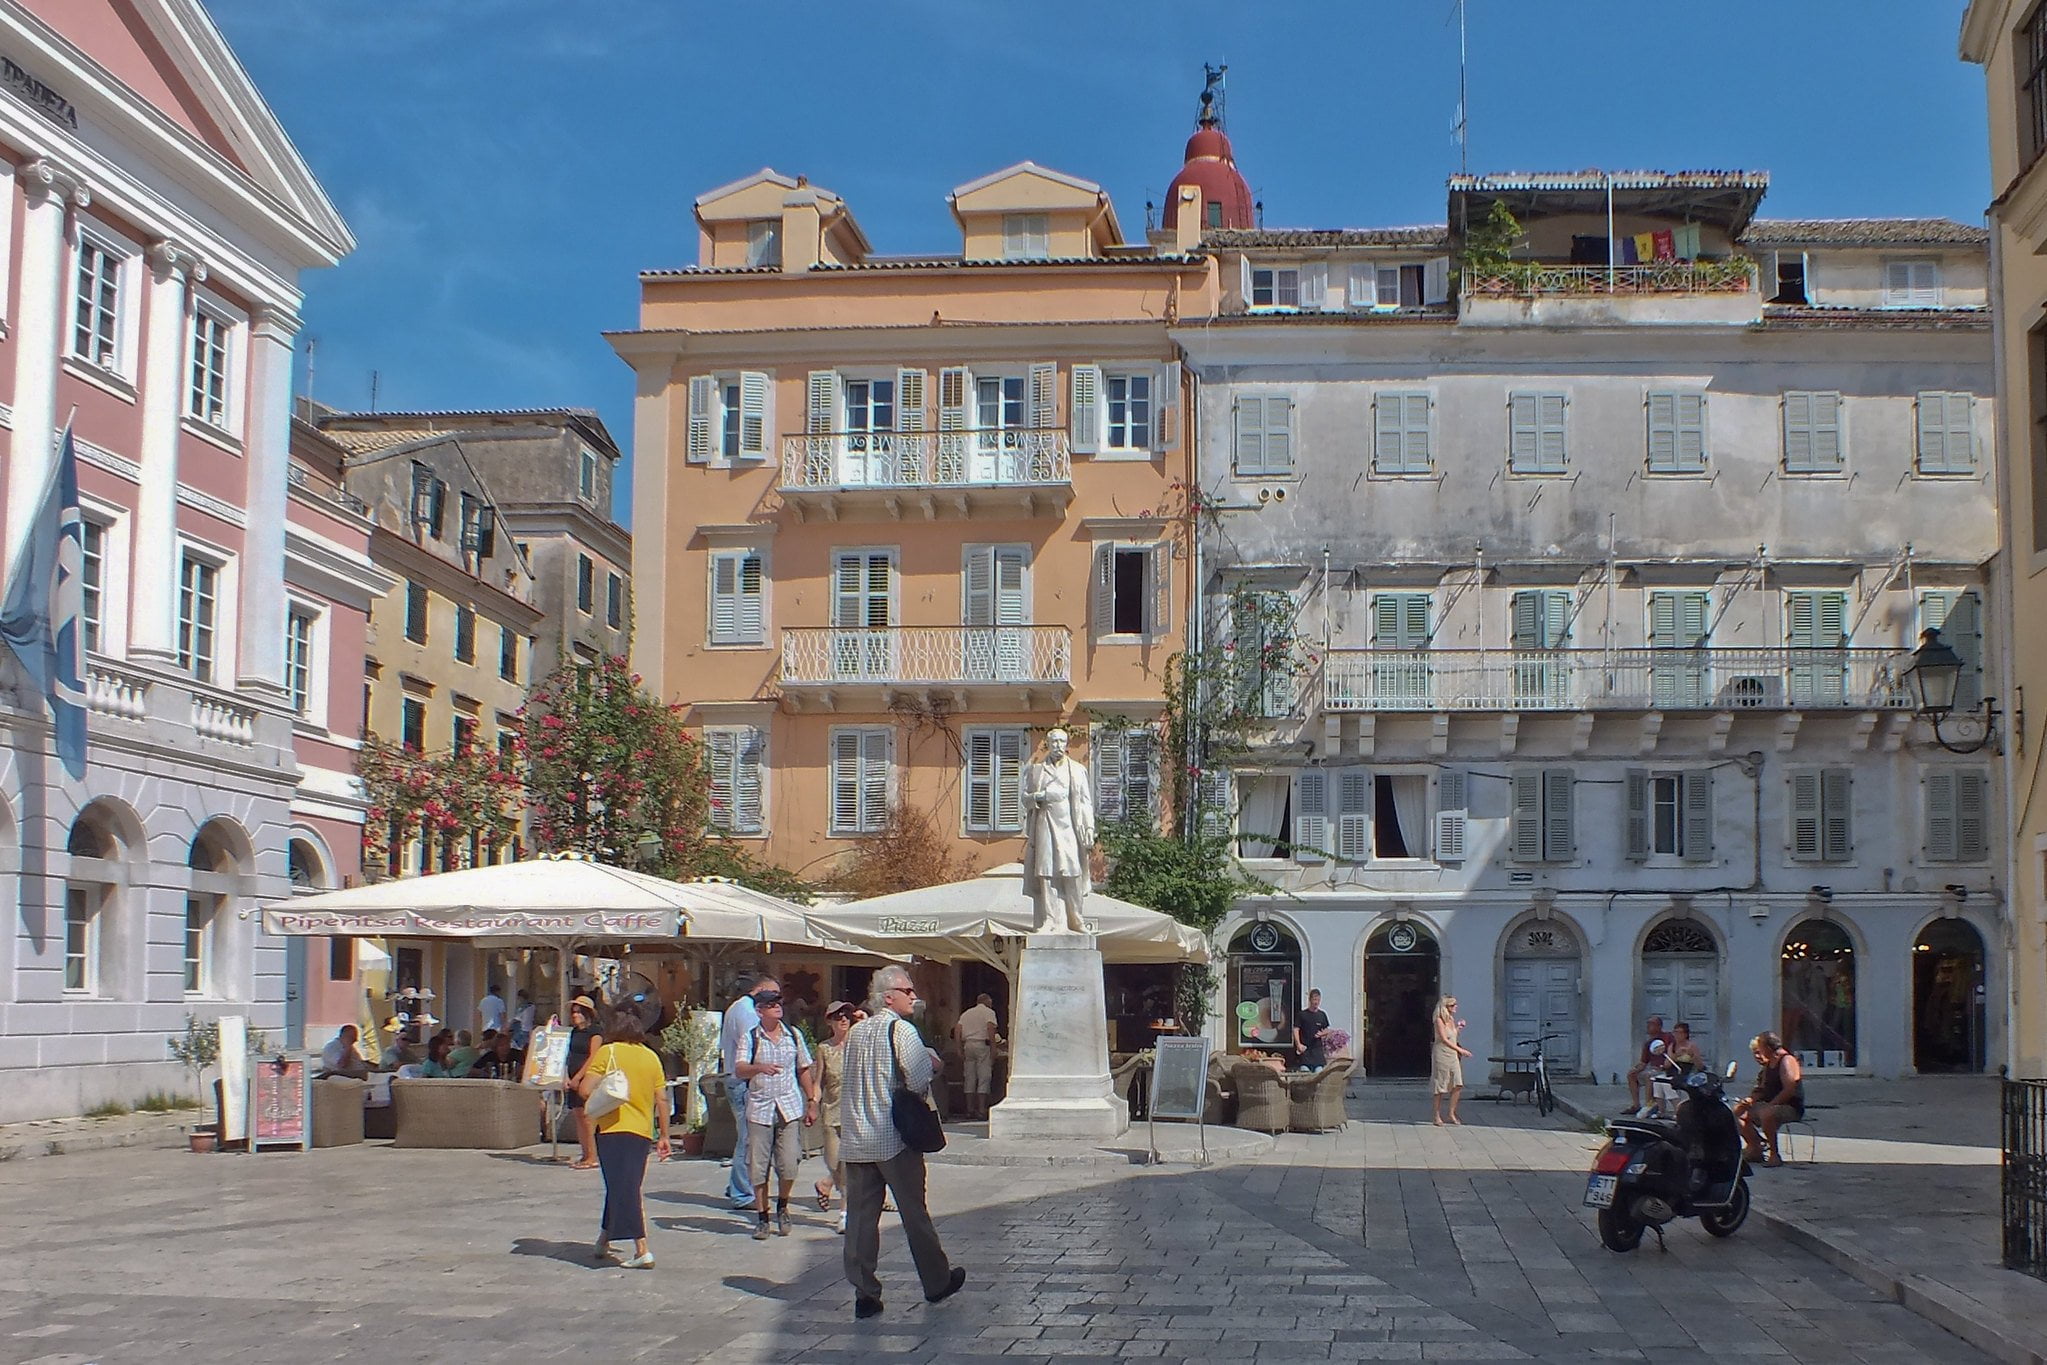 Corfu Town - Corfu the Countess of the Ionian Sea